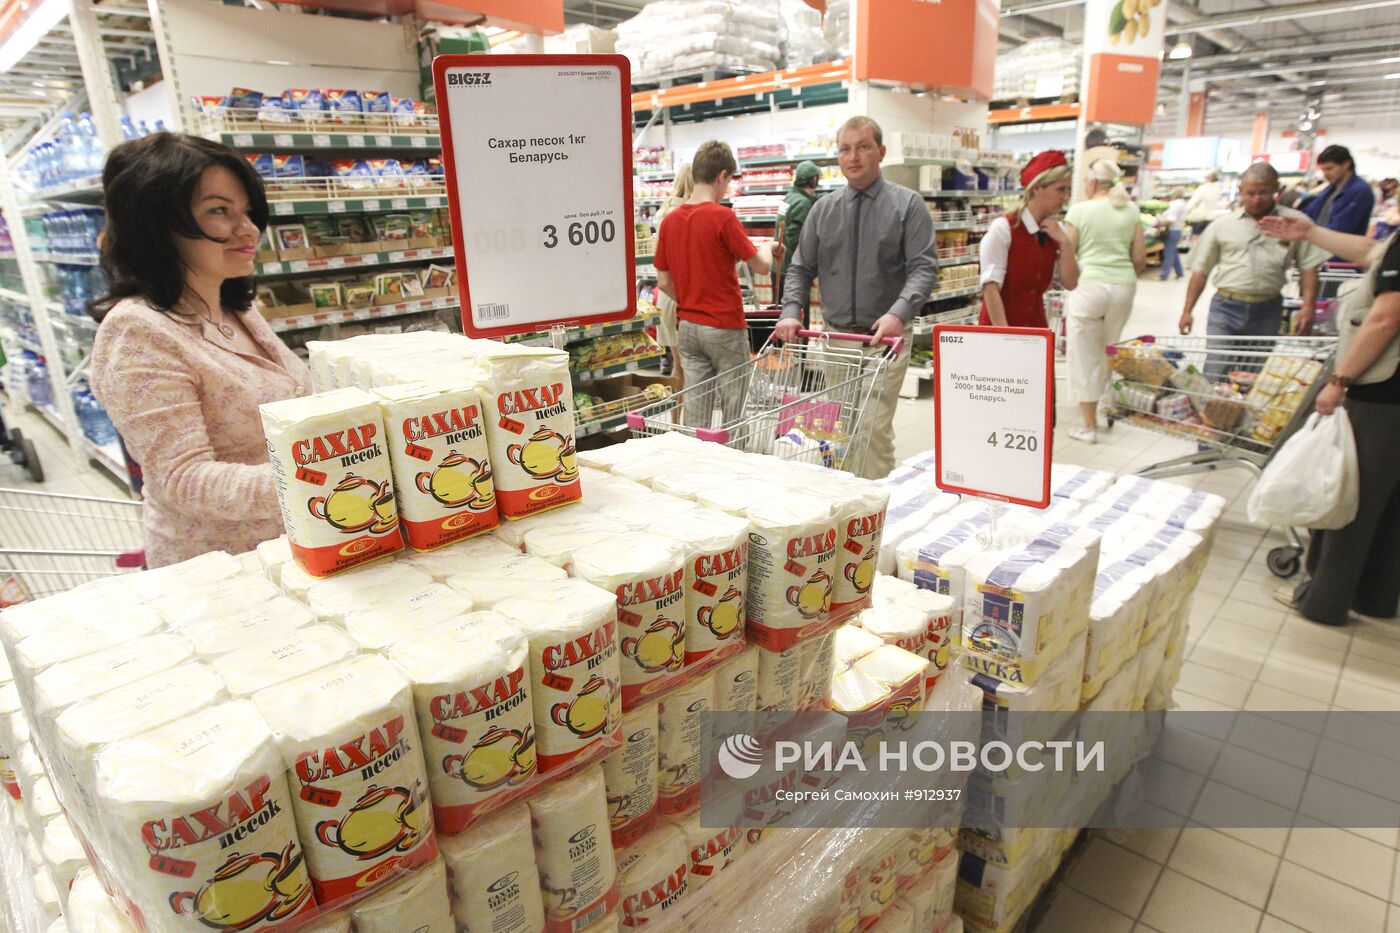 Повышеная активность потребительского рынка наблюдается в Минске